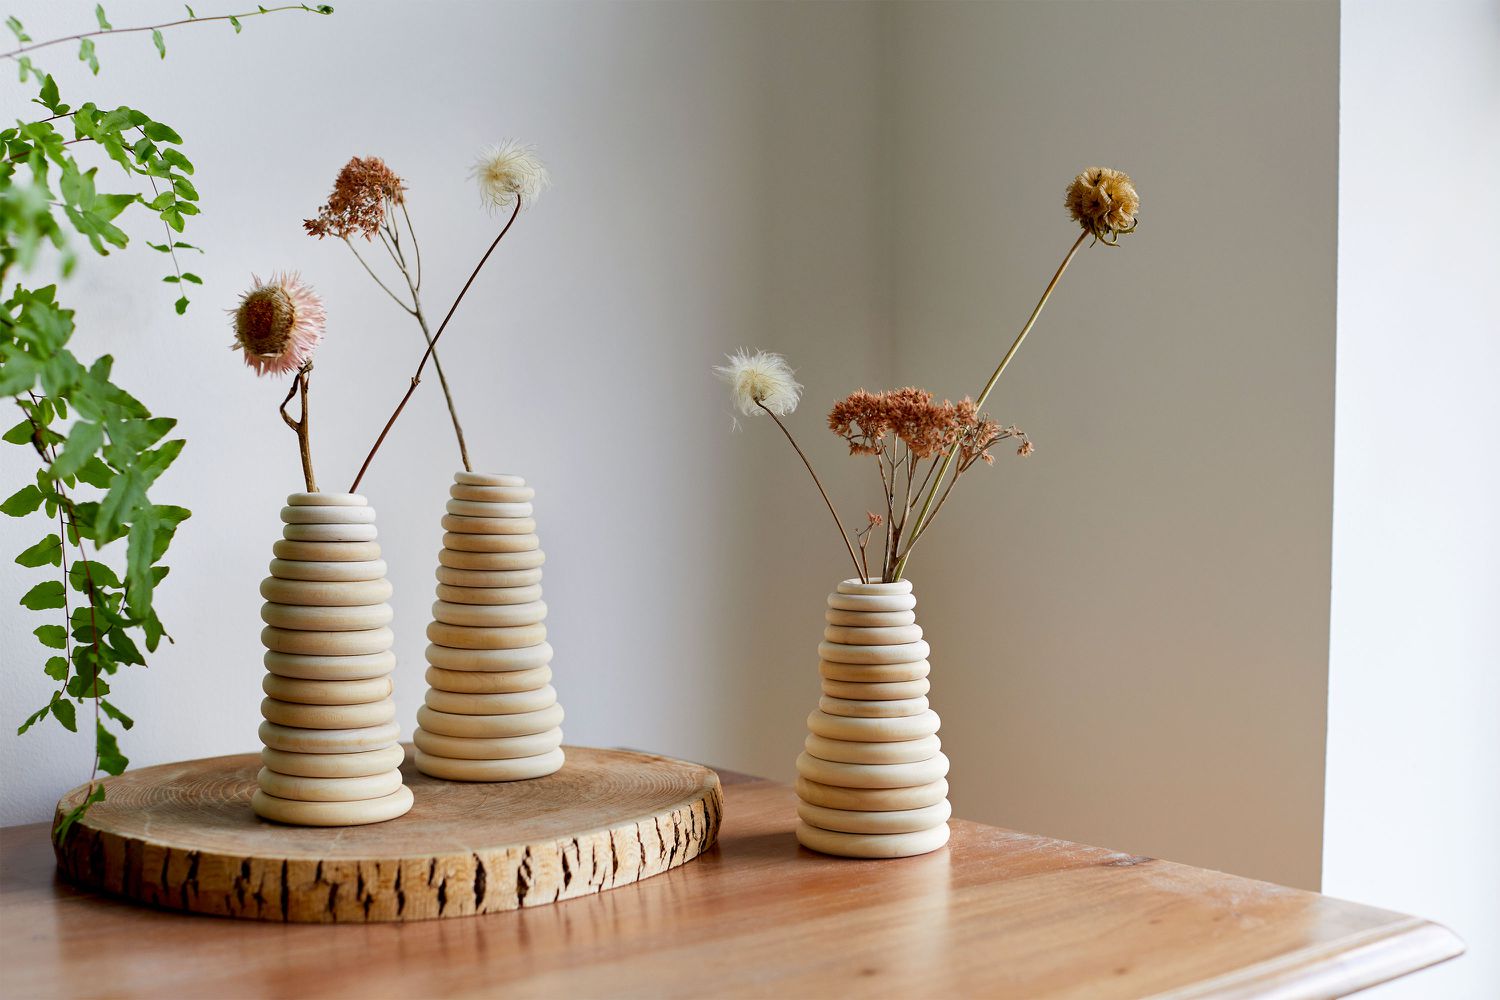 Holzringe als DIY-Vasen zum Falten von Trockenblumen auf dünnen Stielen